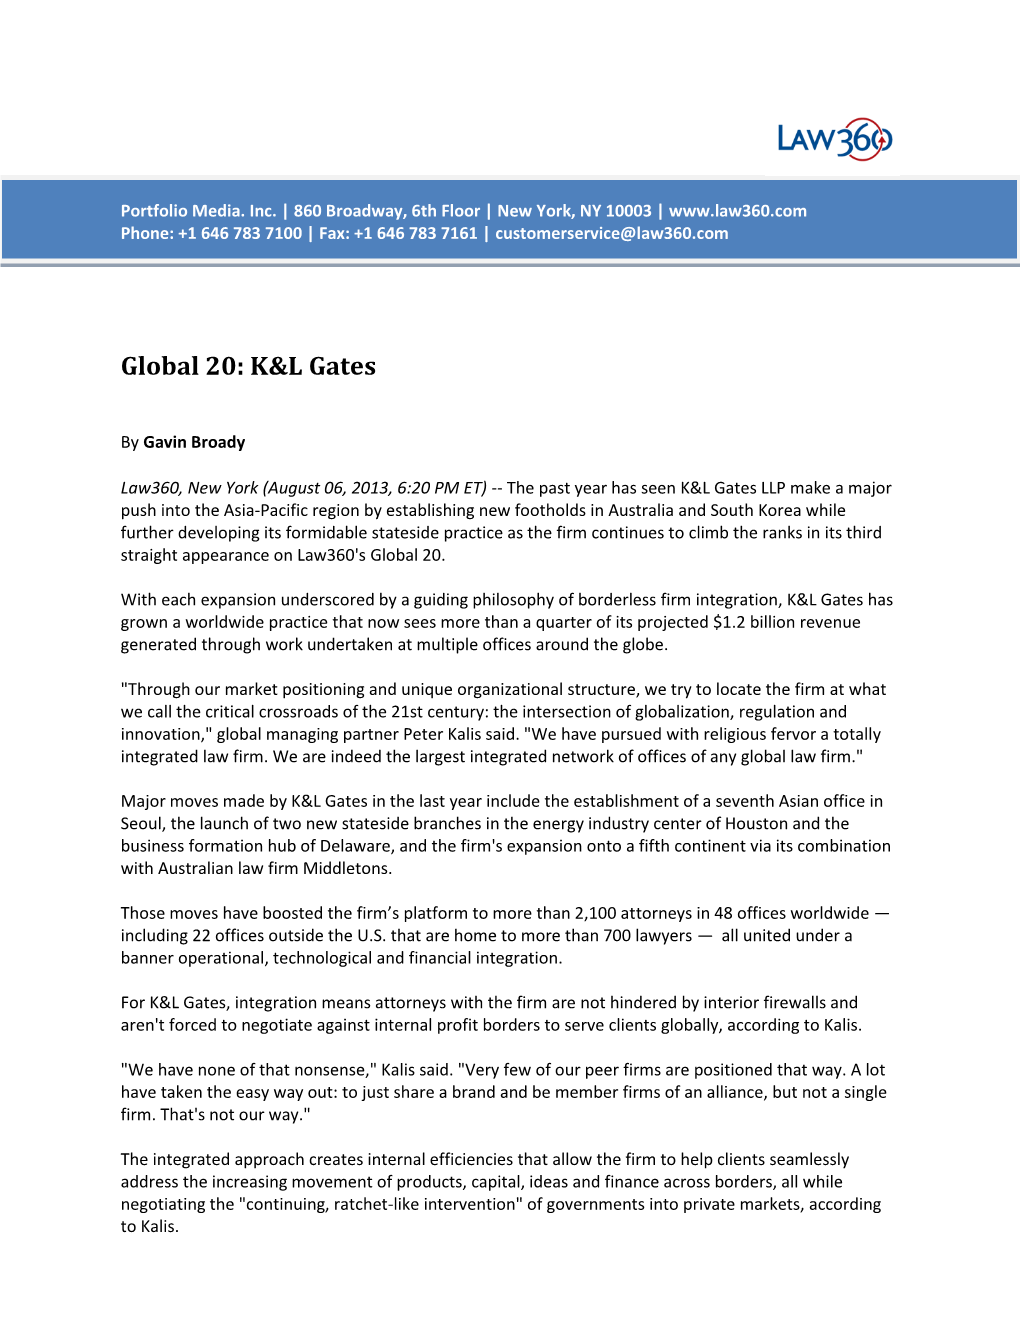 Global 20: K&L Gates